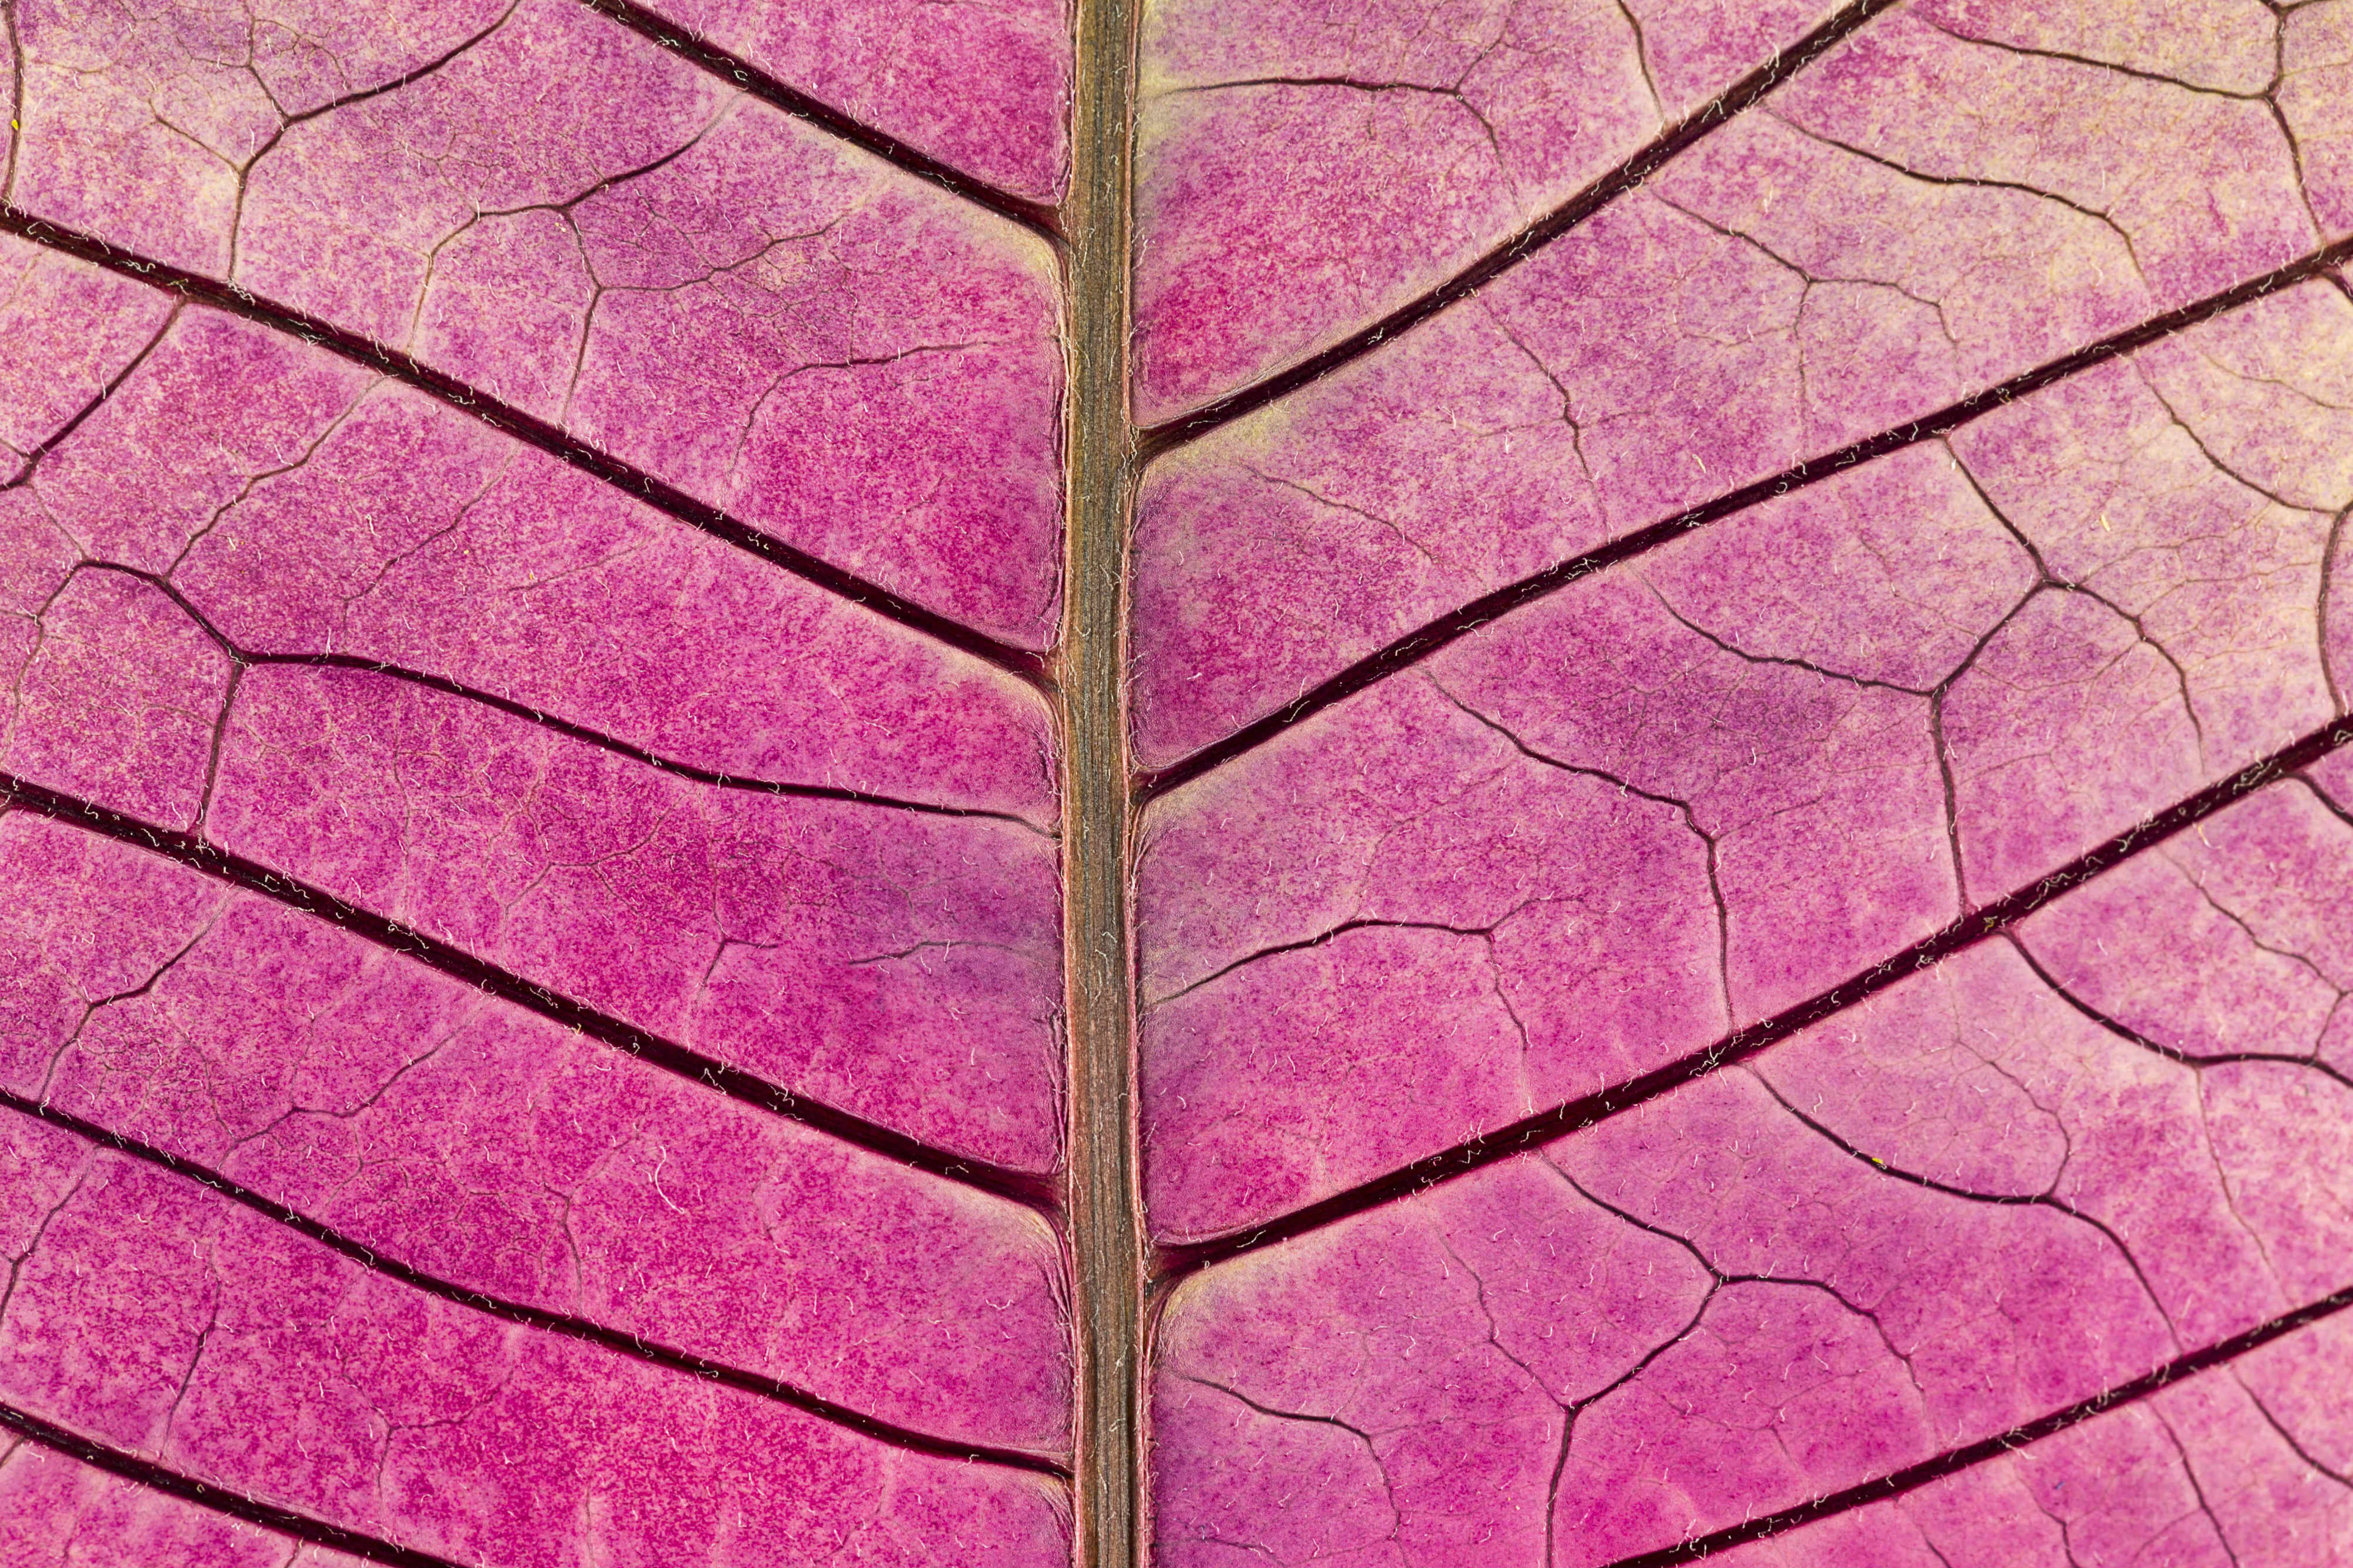 Ampliación de una hoja púrpura donde se aprecian las venas de la planta y su textura